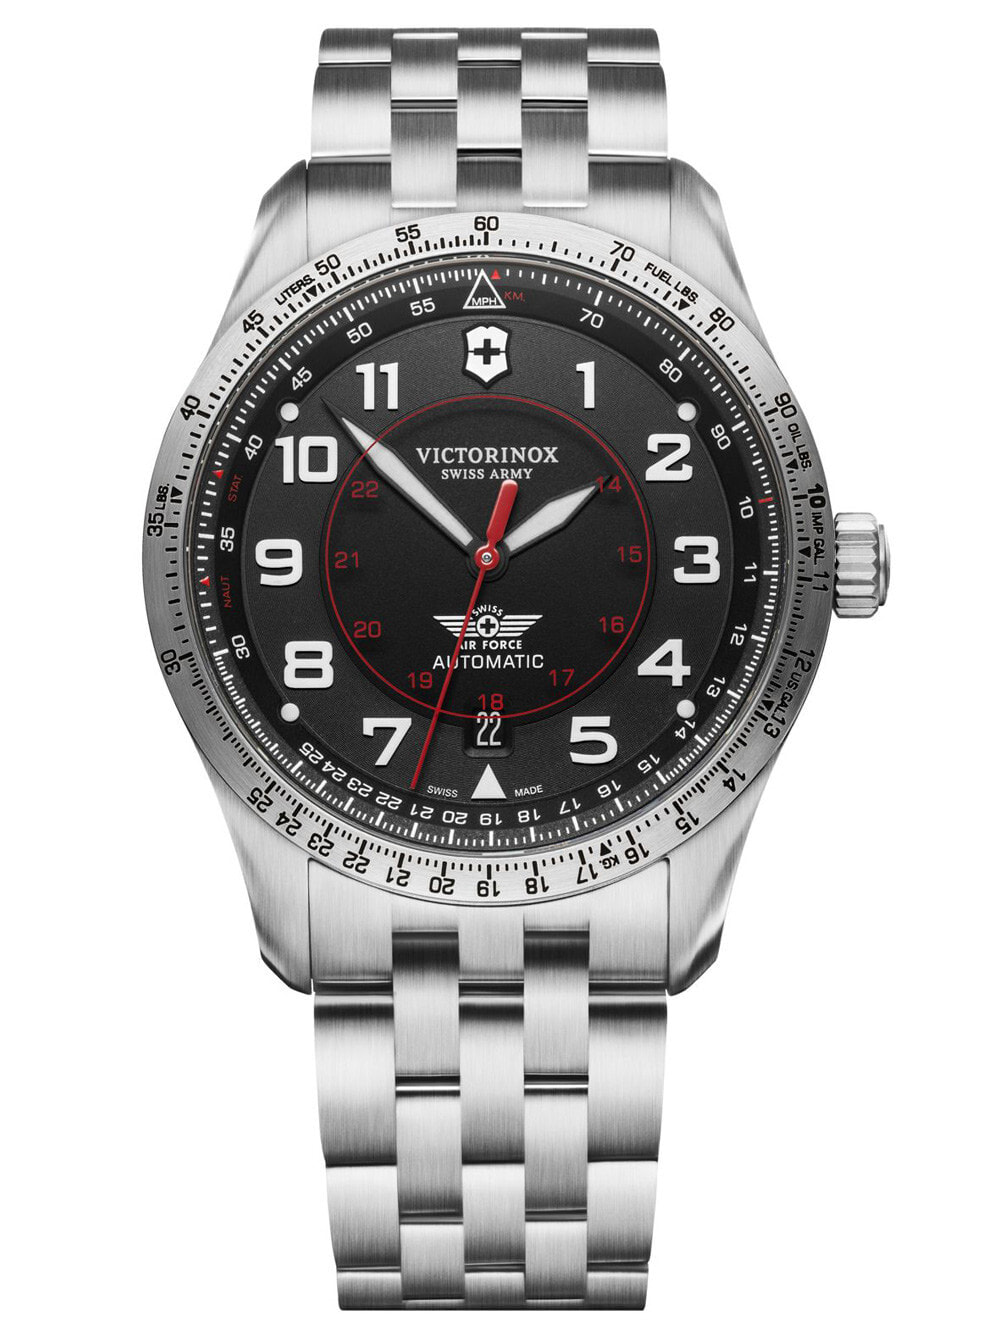 Мужские наручные часы с серебристым браслетом Victorinox 241888 Airboss automatic 40mm 10ATM